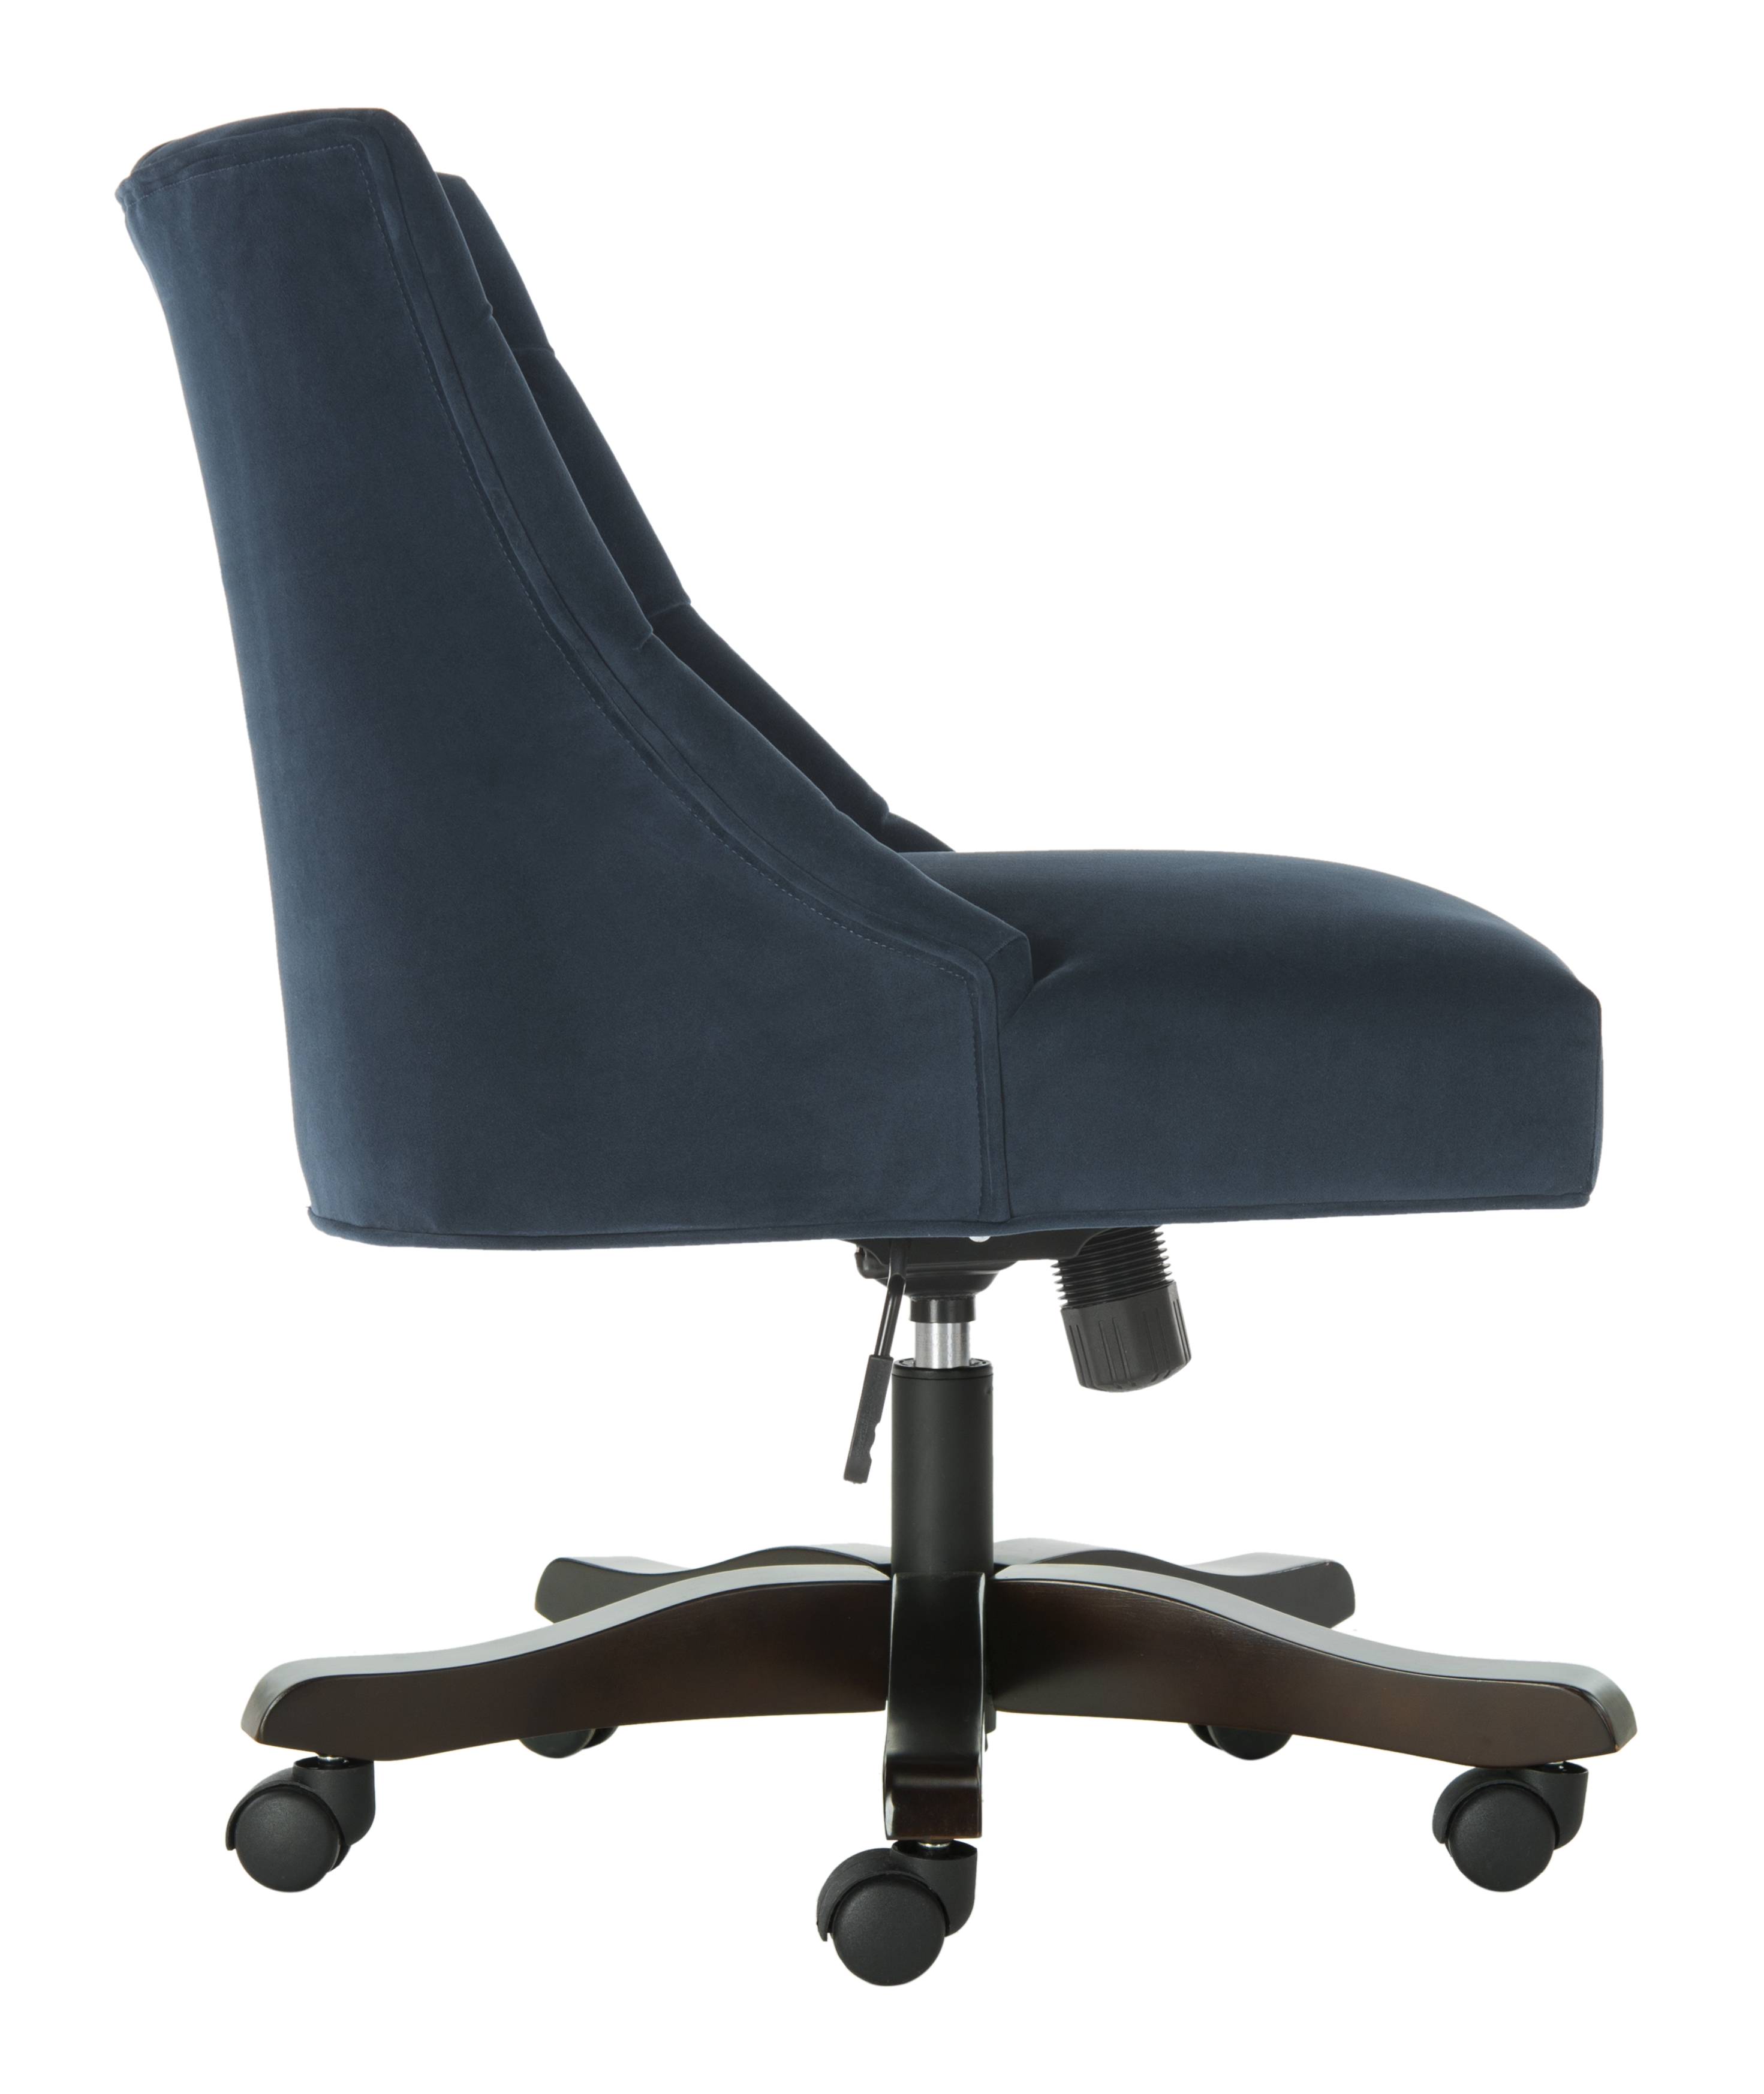 Soho Tufted Velvet Swivel Desk Chair - Navy - Arlo Home - Image 1